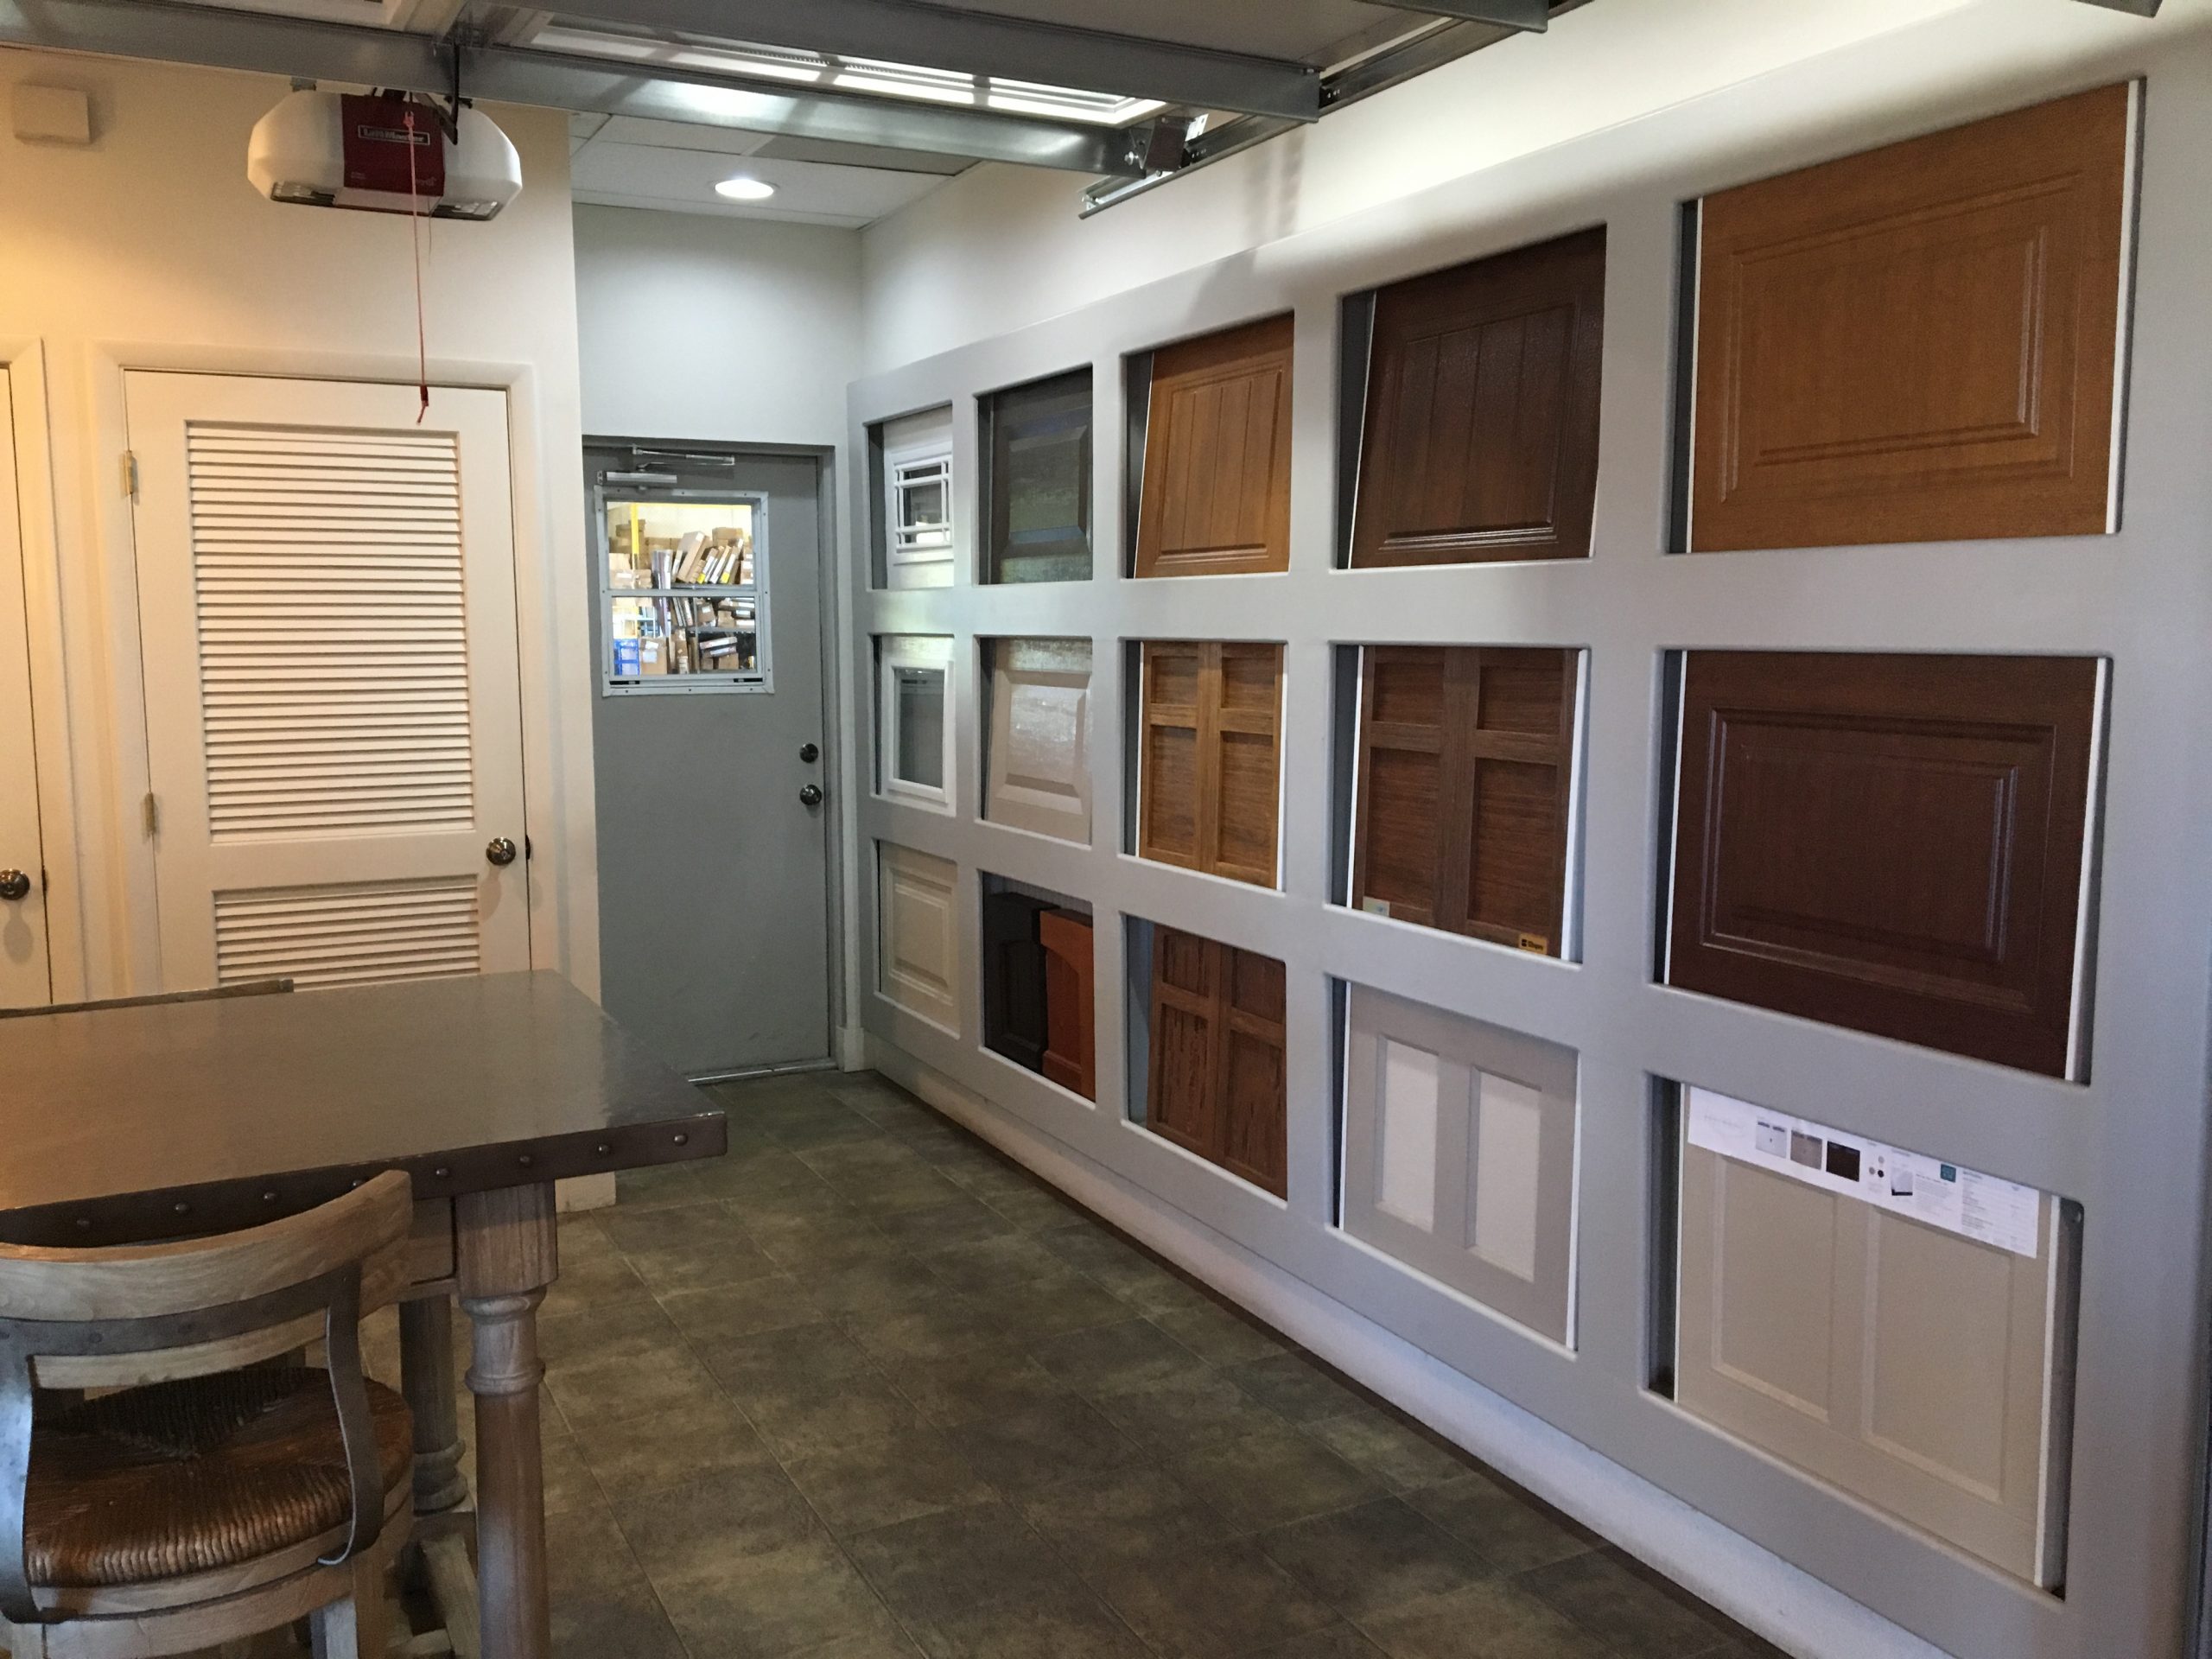 Liftmaster garage door opener, and several garage door designs from the Banko Overhead Doors, Inc. garage door showroom in Tampa.